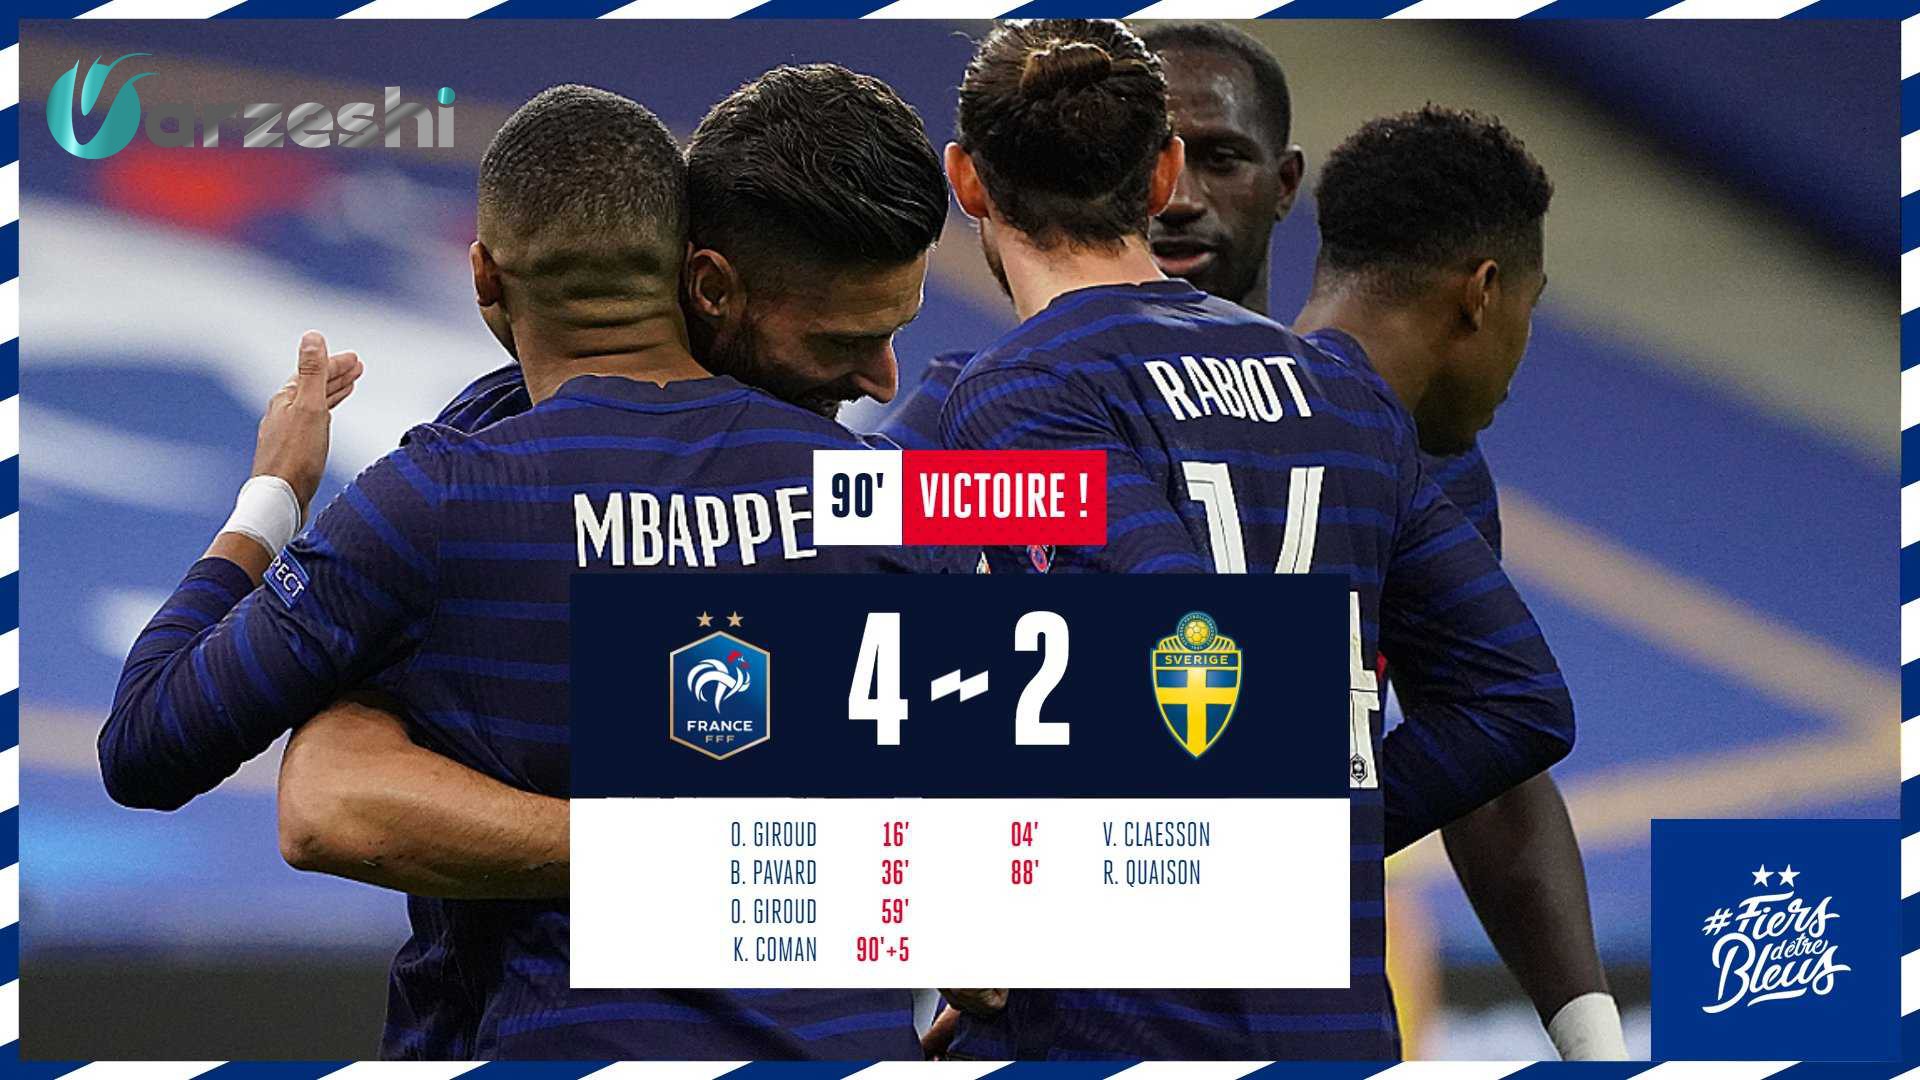 پیروزی تیم ملی فرانسه مقابل تیم ملی سوئد